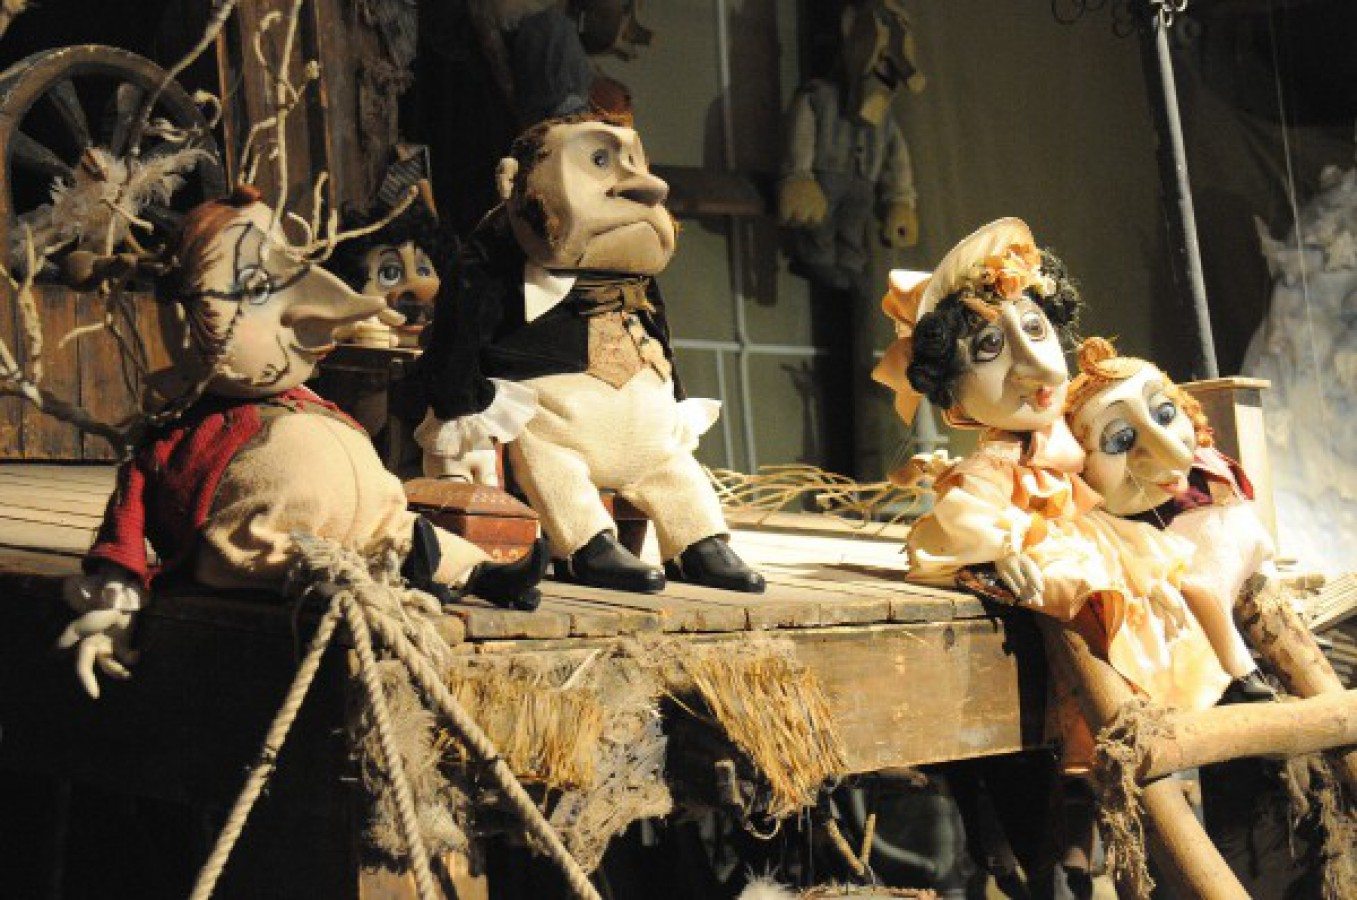 воронежский кукольный театр